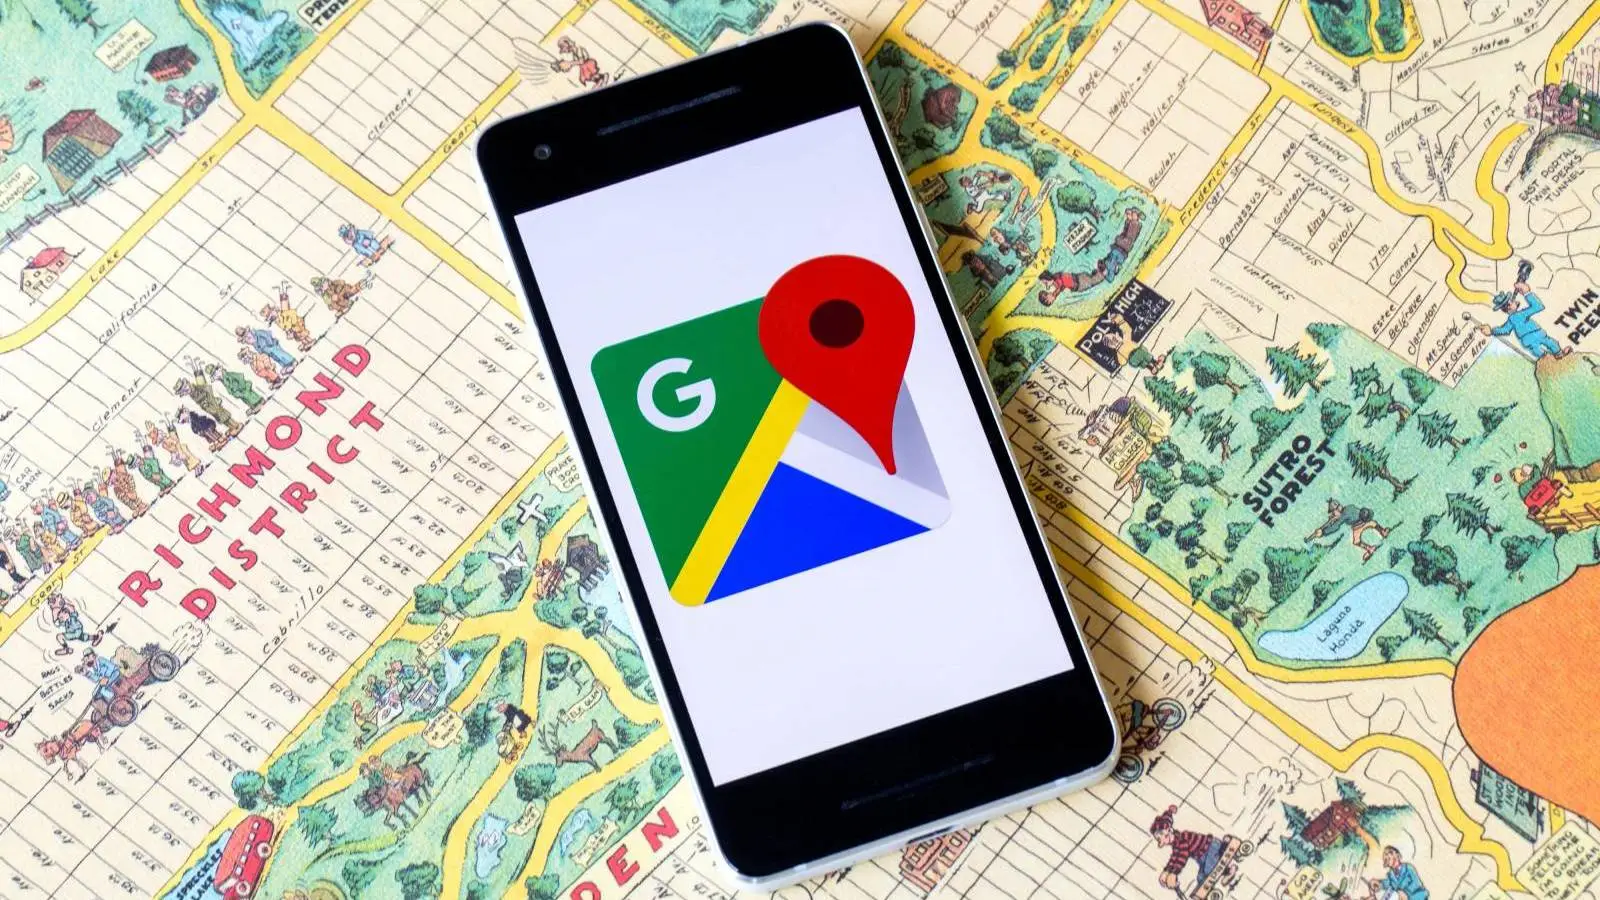 Actualización de Google Maps lanzada con novedades para teléfonos y tabletas